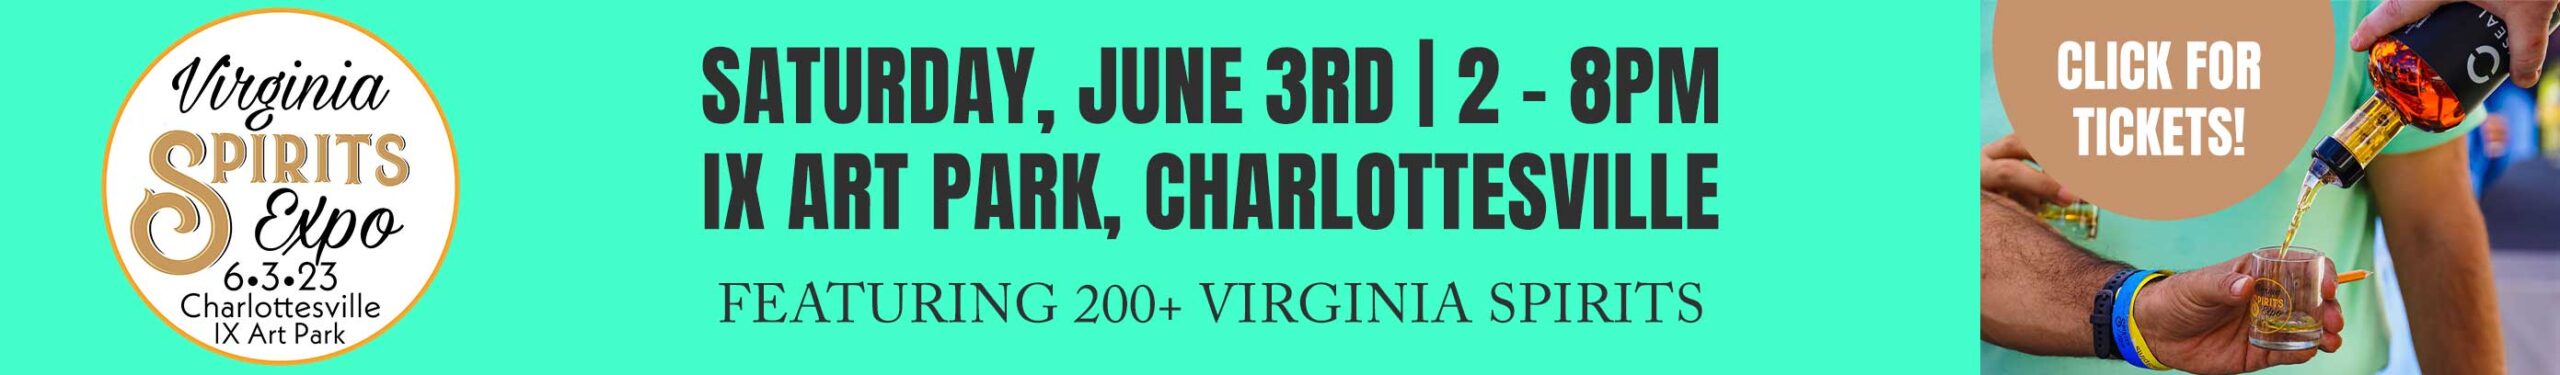 Virginia Spirits Expo 2023 Charlottesville